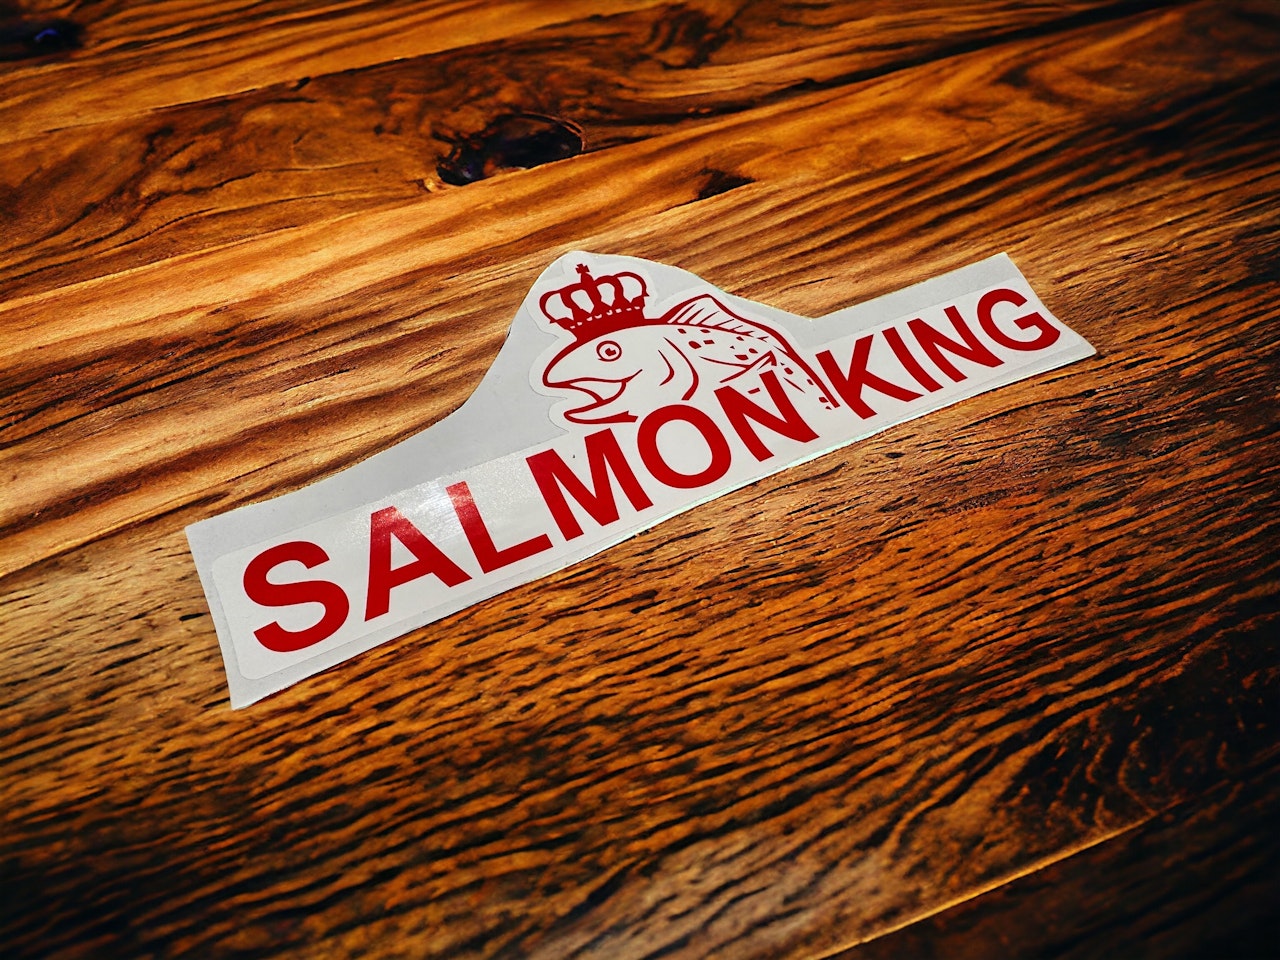 Salmon King dekal 300x100 mm RÖD